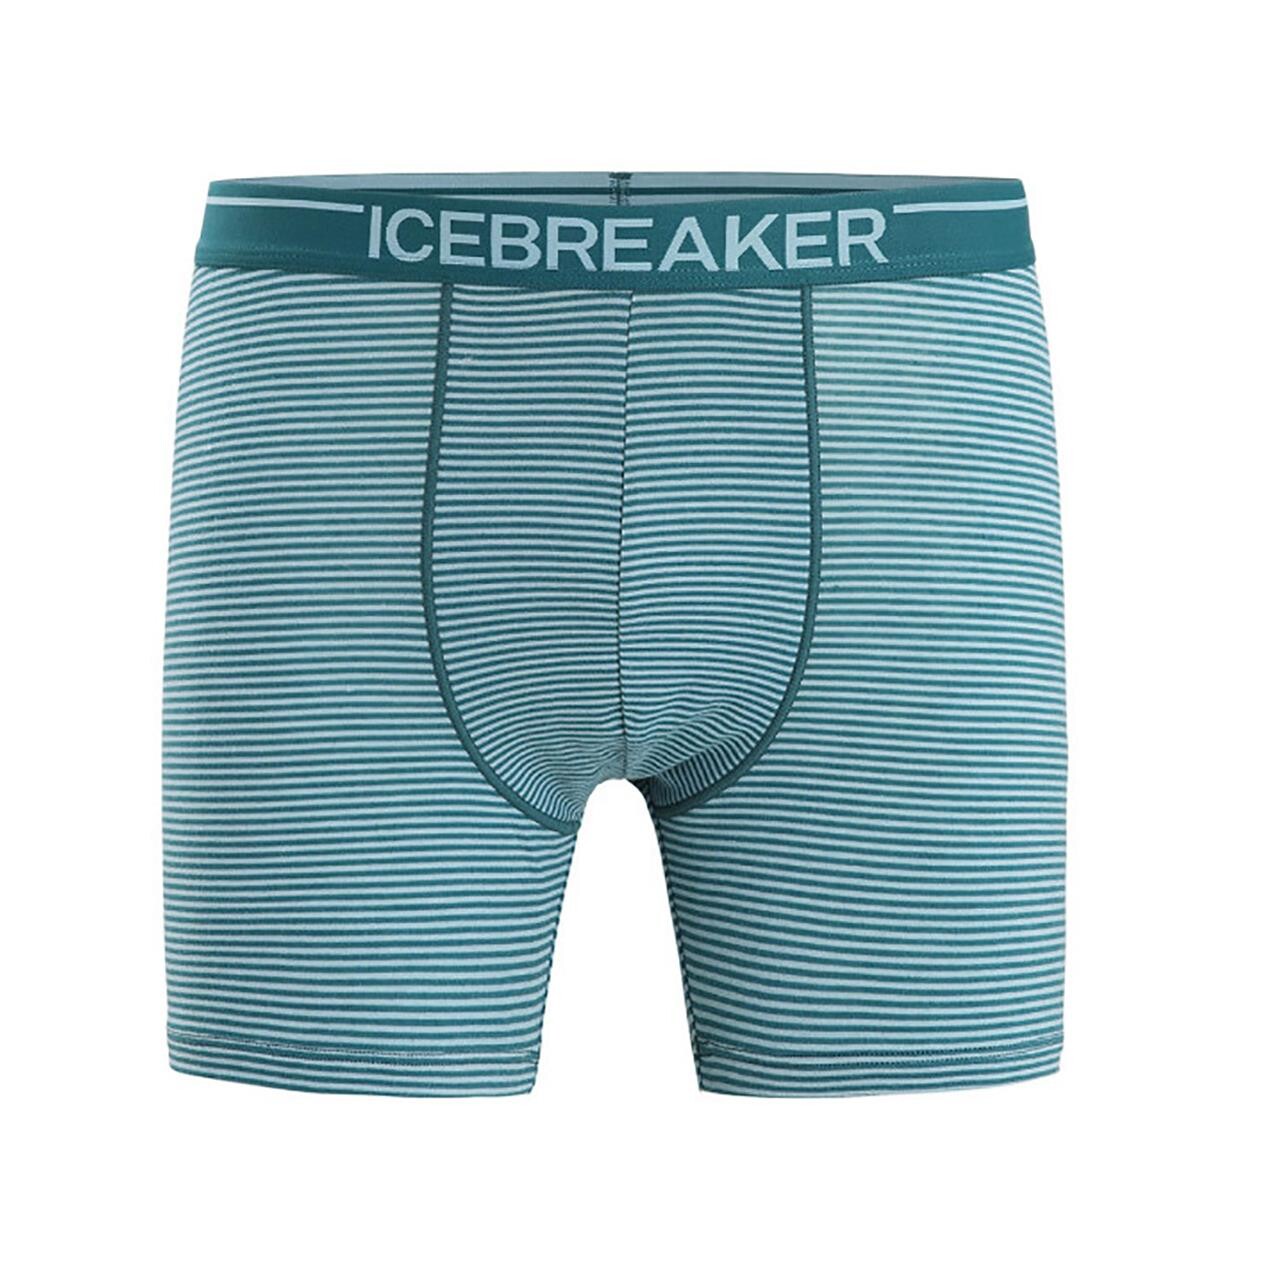 Billede af Icebreaker Mens Anatomica Boxers (Grøn (GREEN GLORY/ASTRAL BLUE/S) Small)